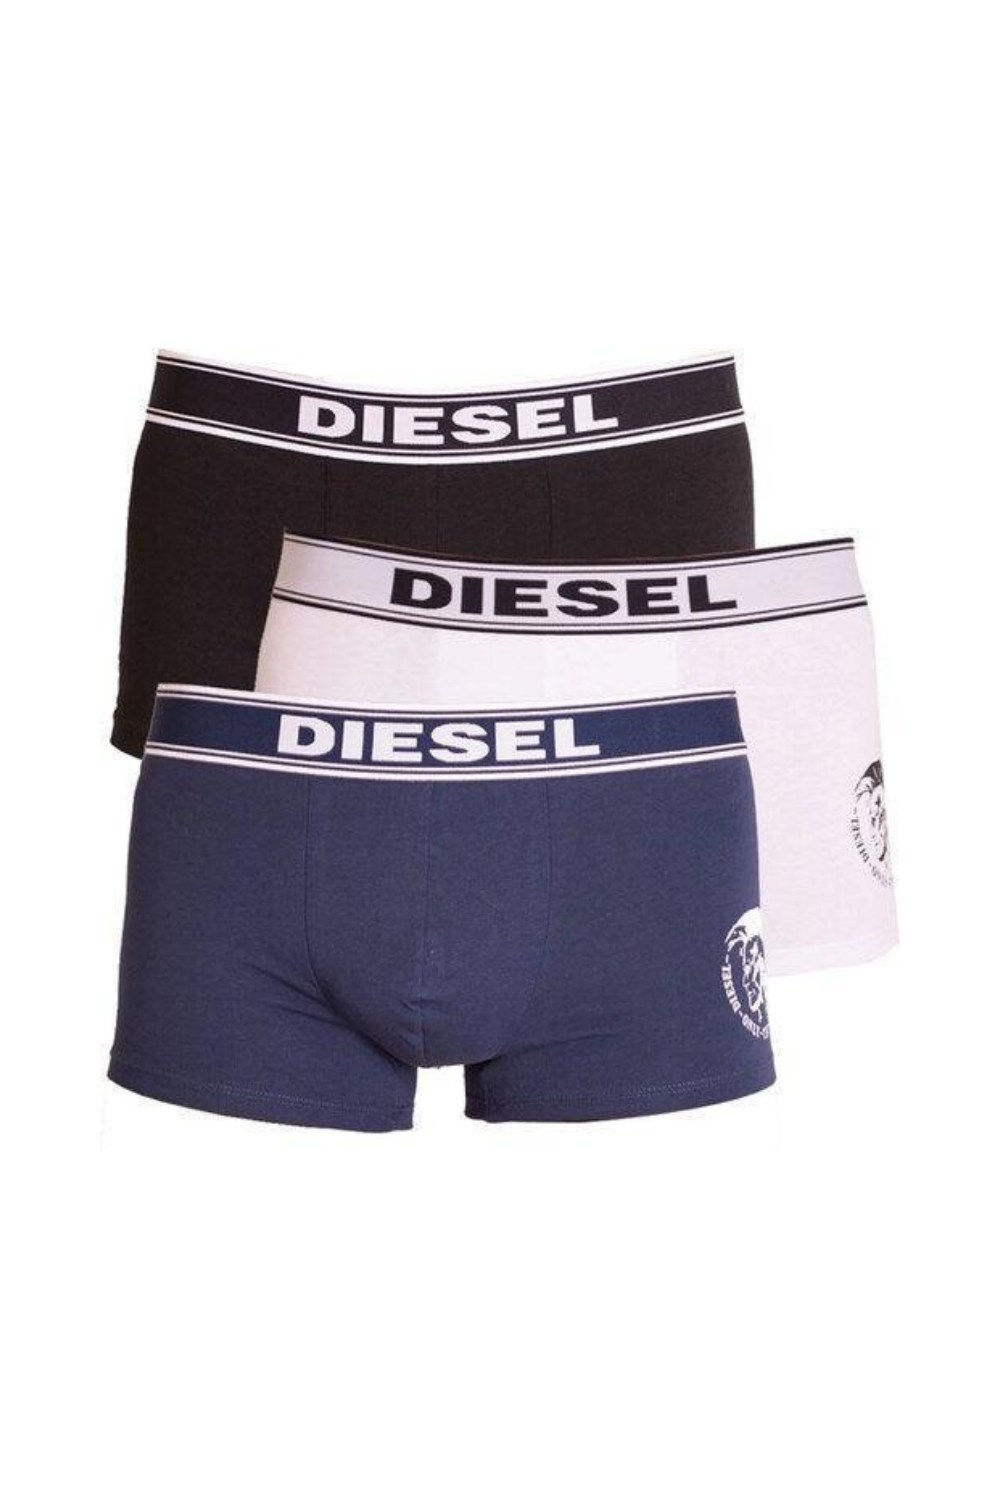 Diesel - Boxers 3 Piece